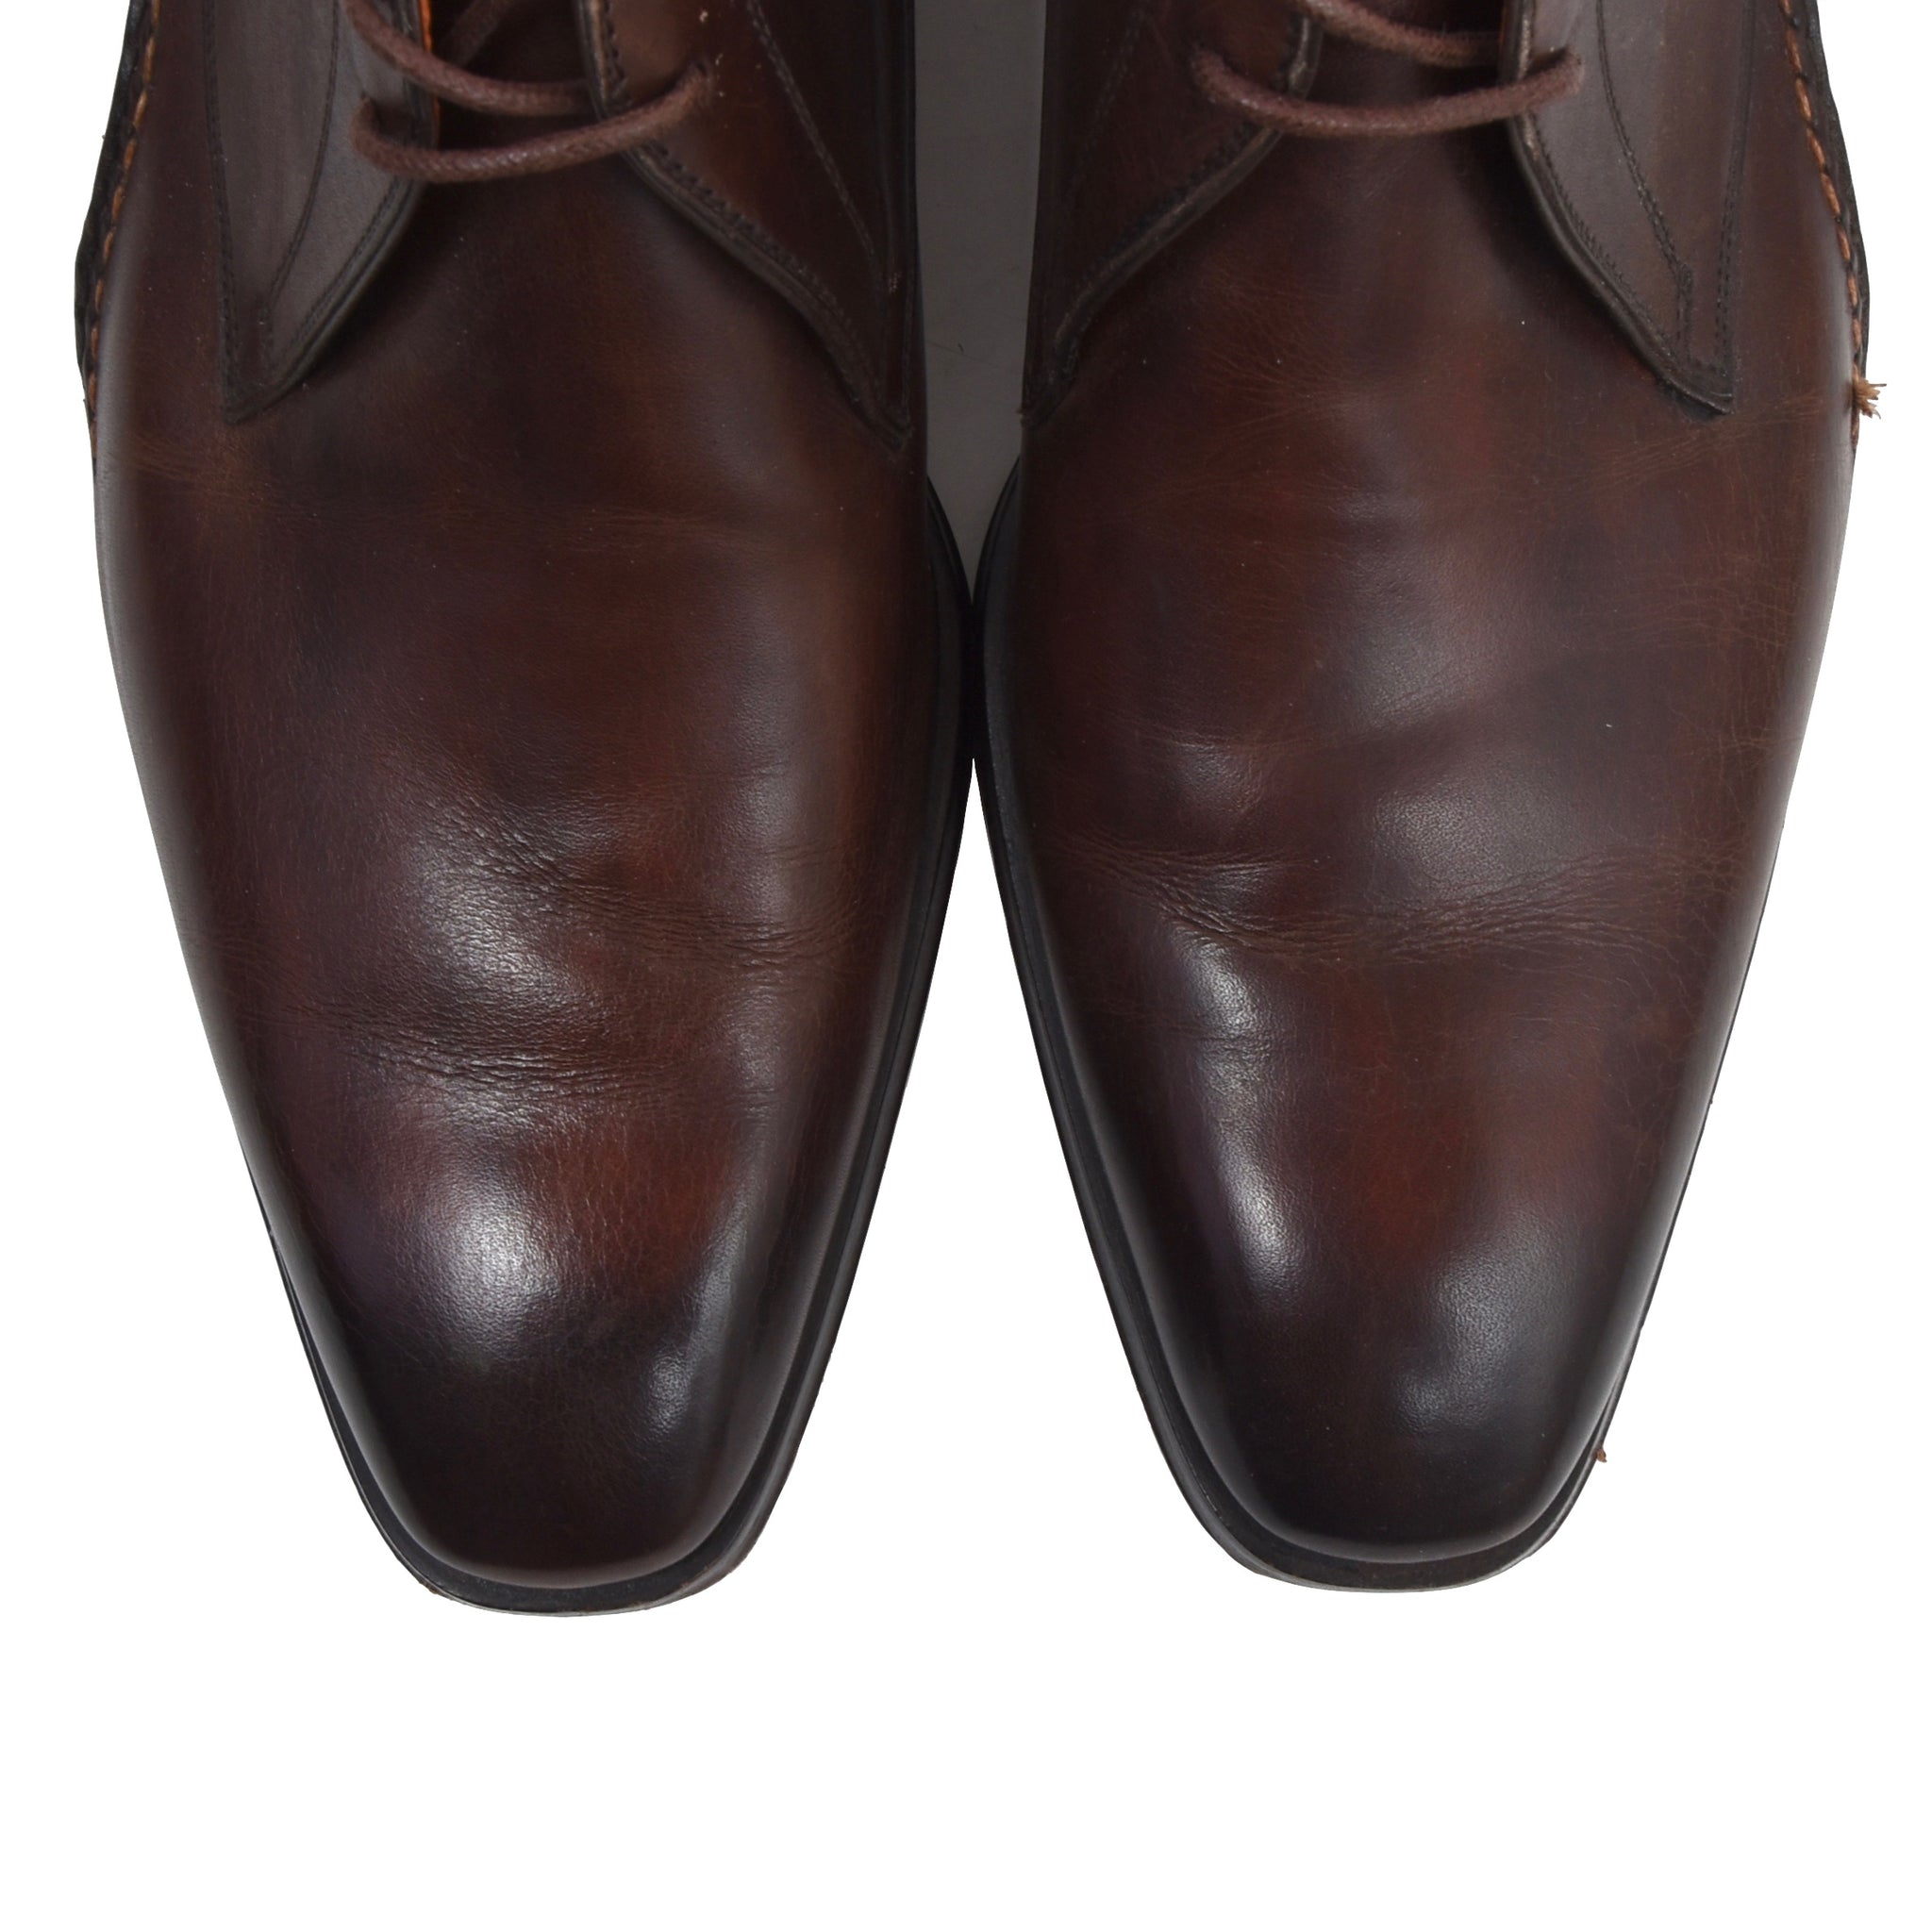 Magnanni Shoes Size 41.5 - Brown – Leot James